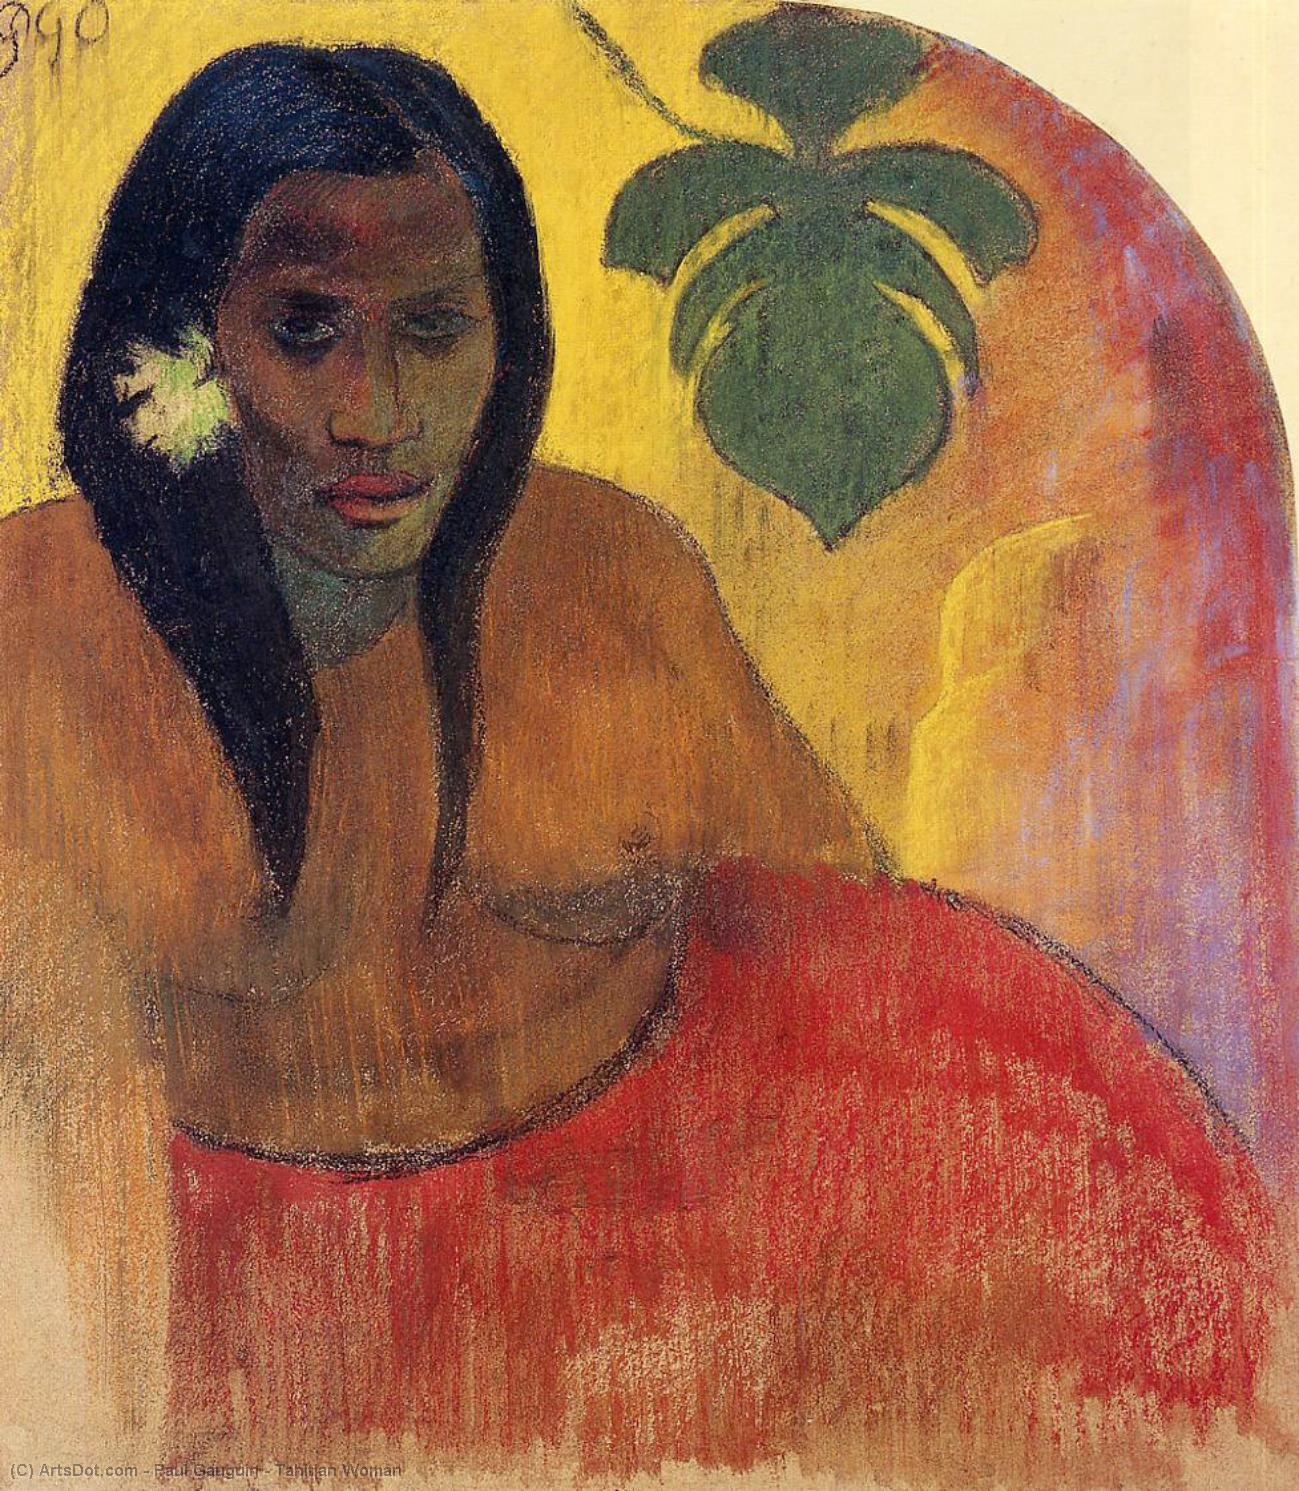 Wikoo.org - موسوعة الفنون الجميلة - اللوحة، العمل الفني Paul Gauguin - Tahitian Woman